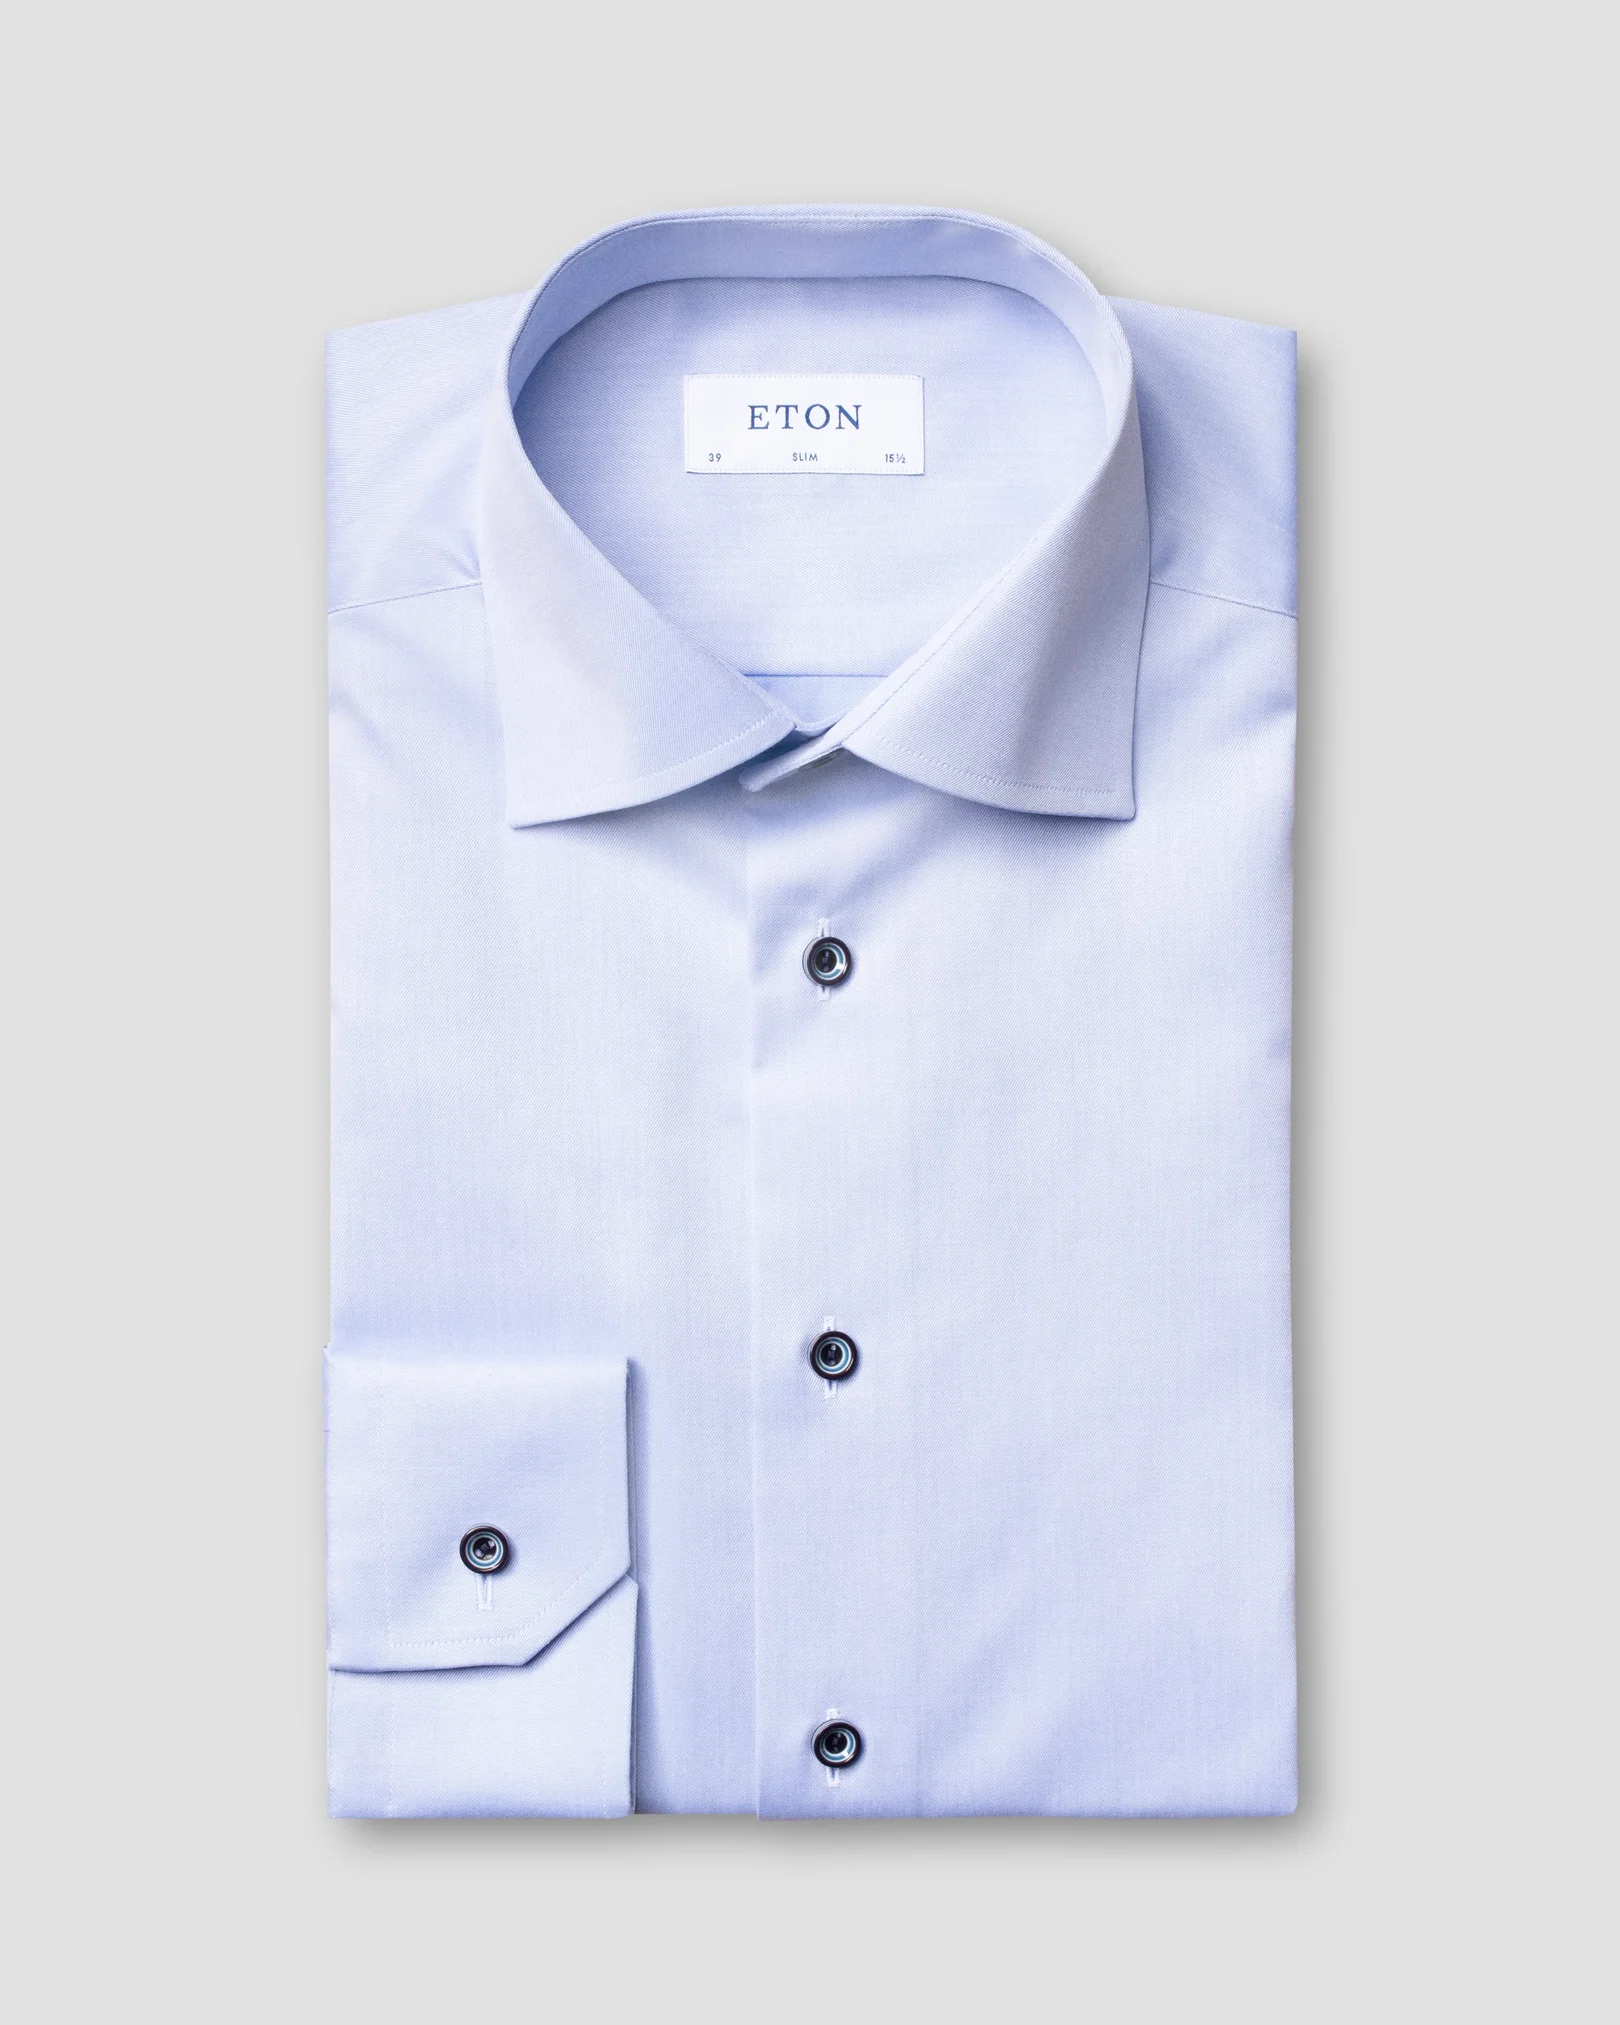 Eton - blue twill shirt navy buttons